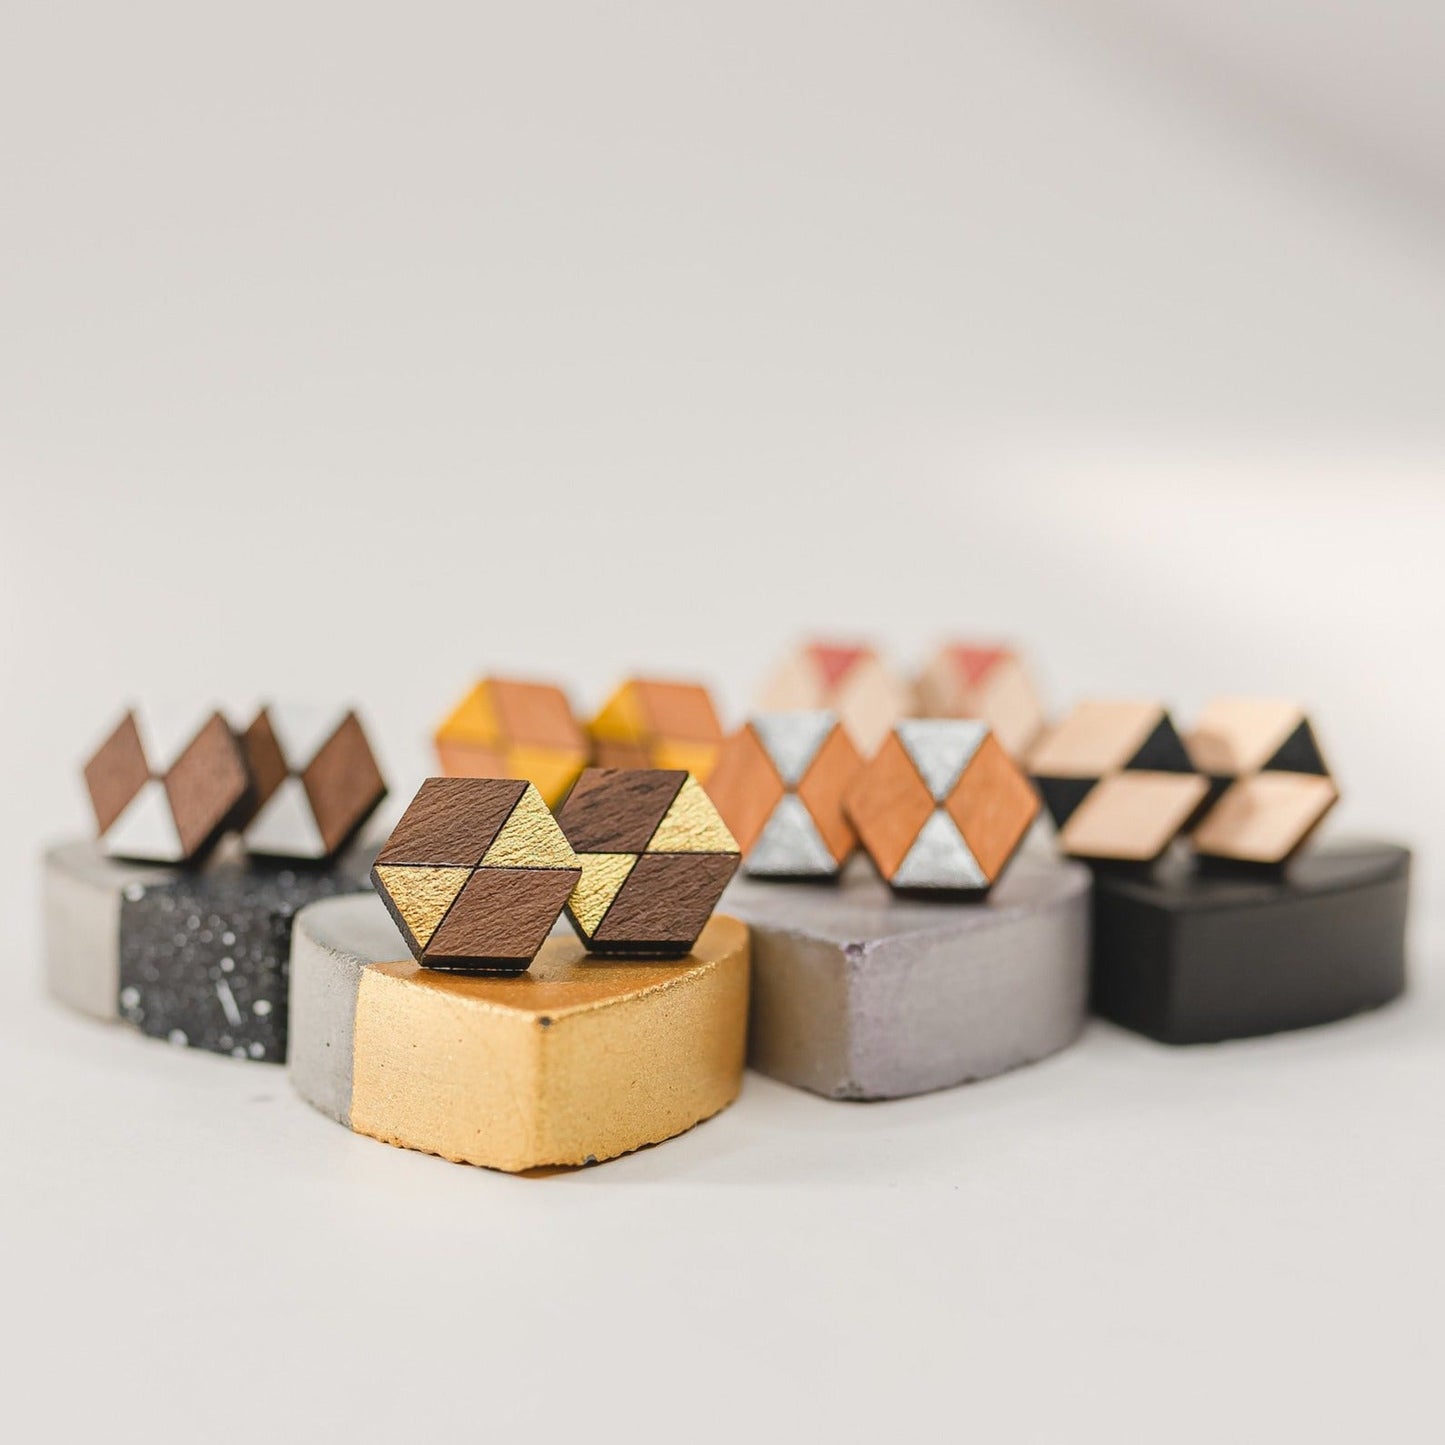 Wooden Laser Cut Earrings - GeoStud Hexagon - by LeeMo Designs in Bend, Oregon